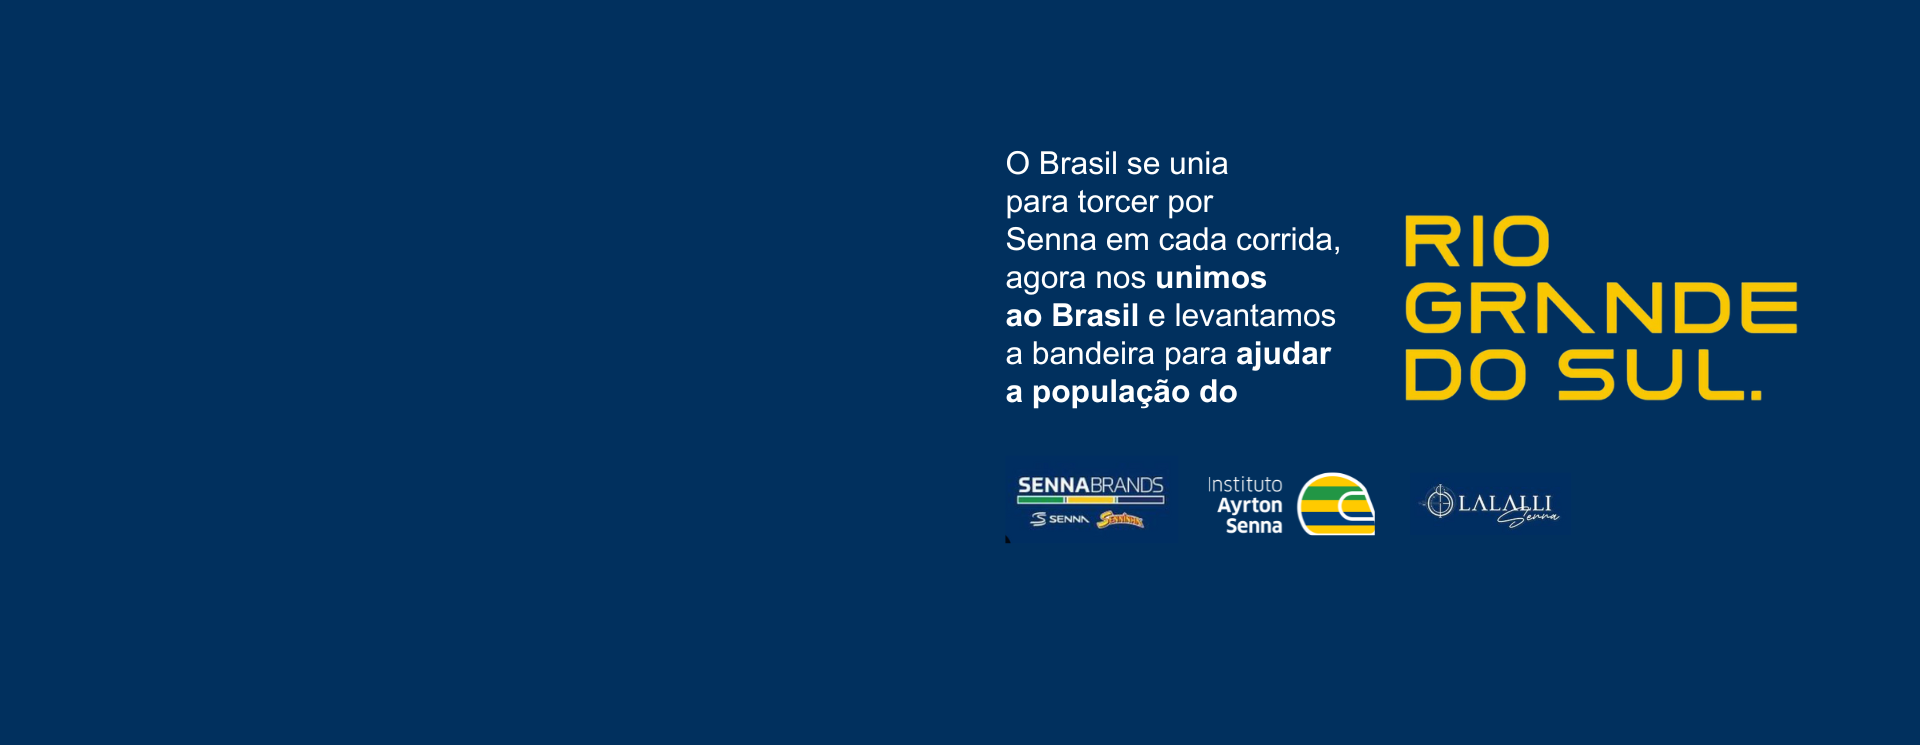 Banner com texto “Ajuda ao Rio Grande do Sul”, com texto menor em português e logotipos do SENAR-RS, Instituto Ayrton Senna e La Salle na parte inferior.